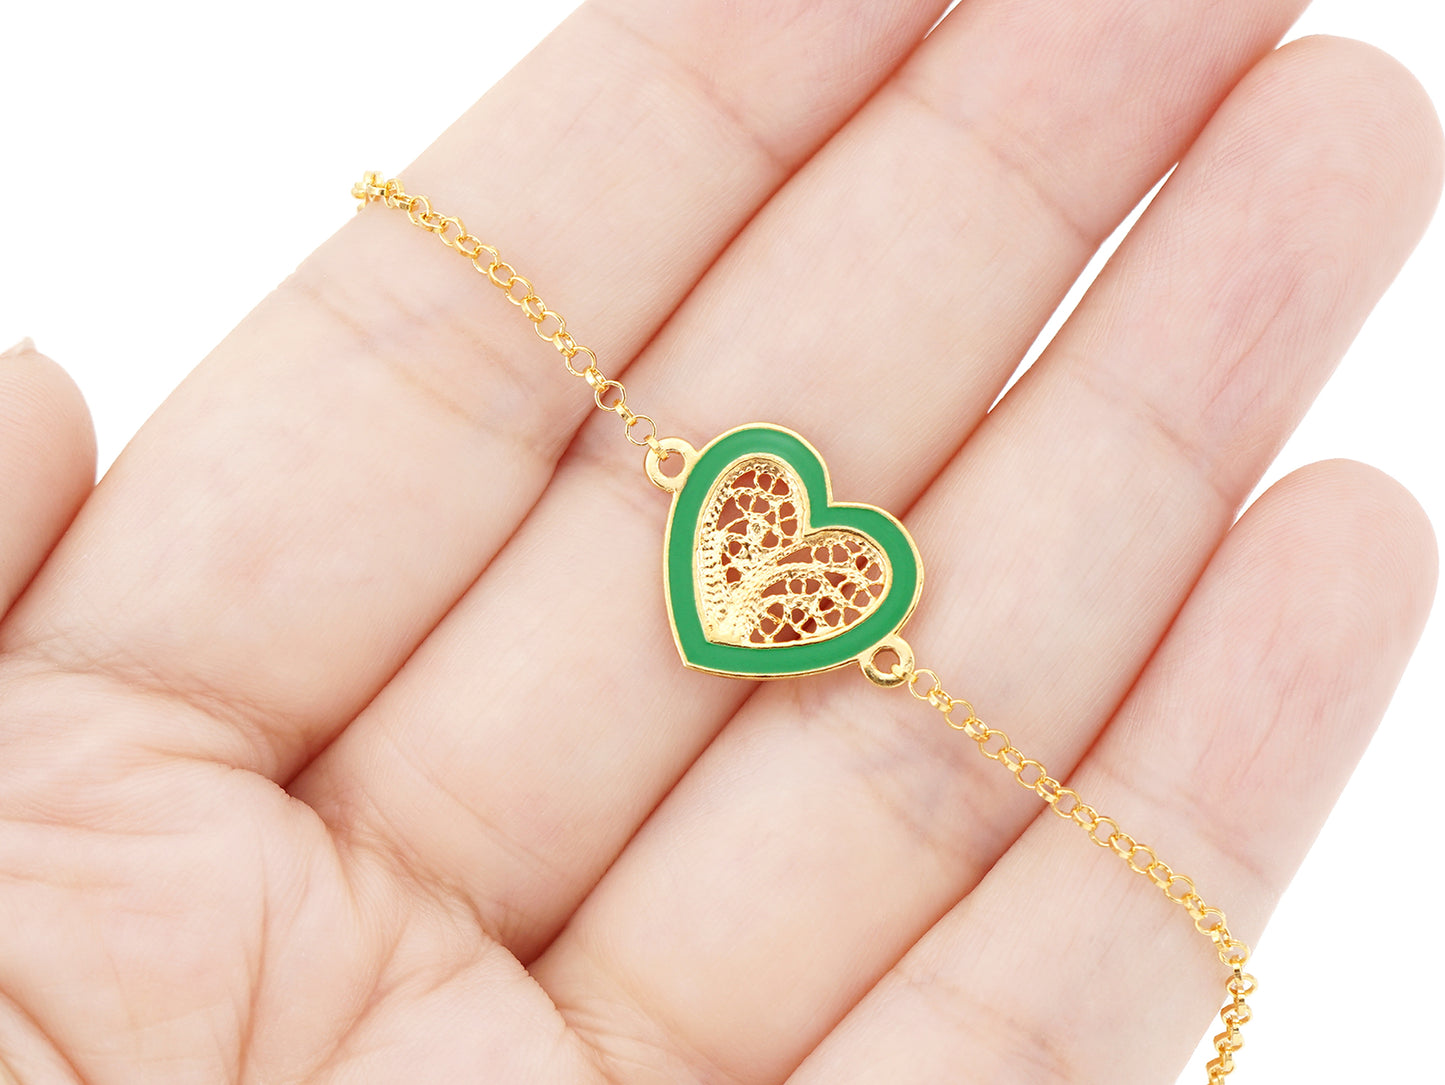 Pulseira Coração Médio Esmalte Verde, Filigrana Portuguesa, Prata de Lei 925 Dourada - Pormenor na mão